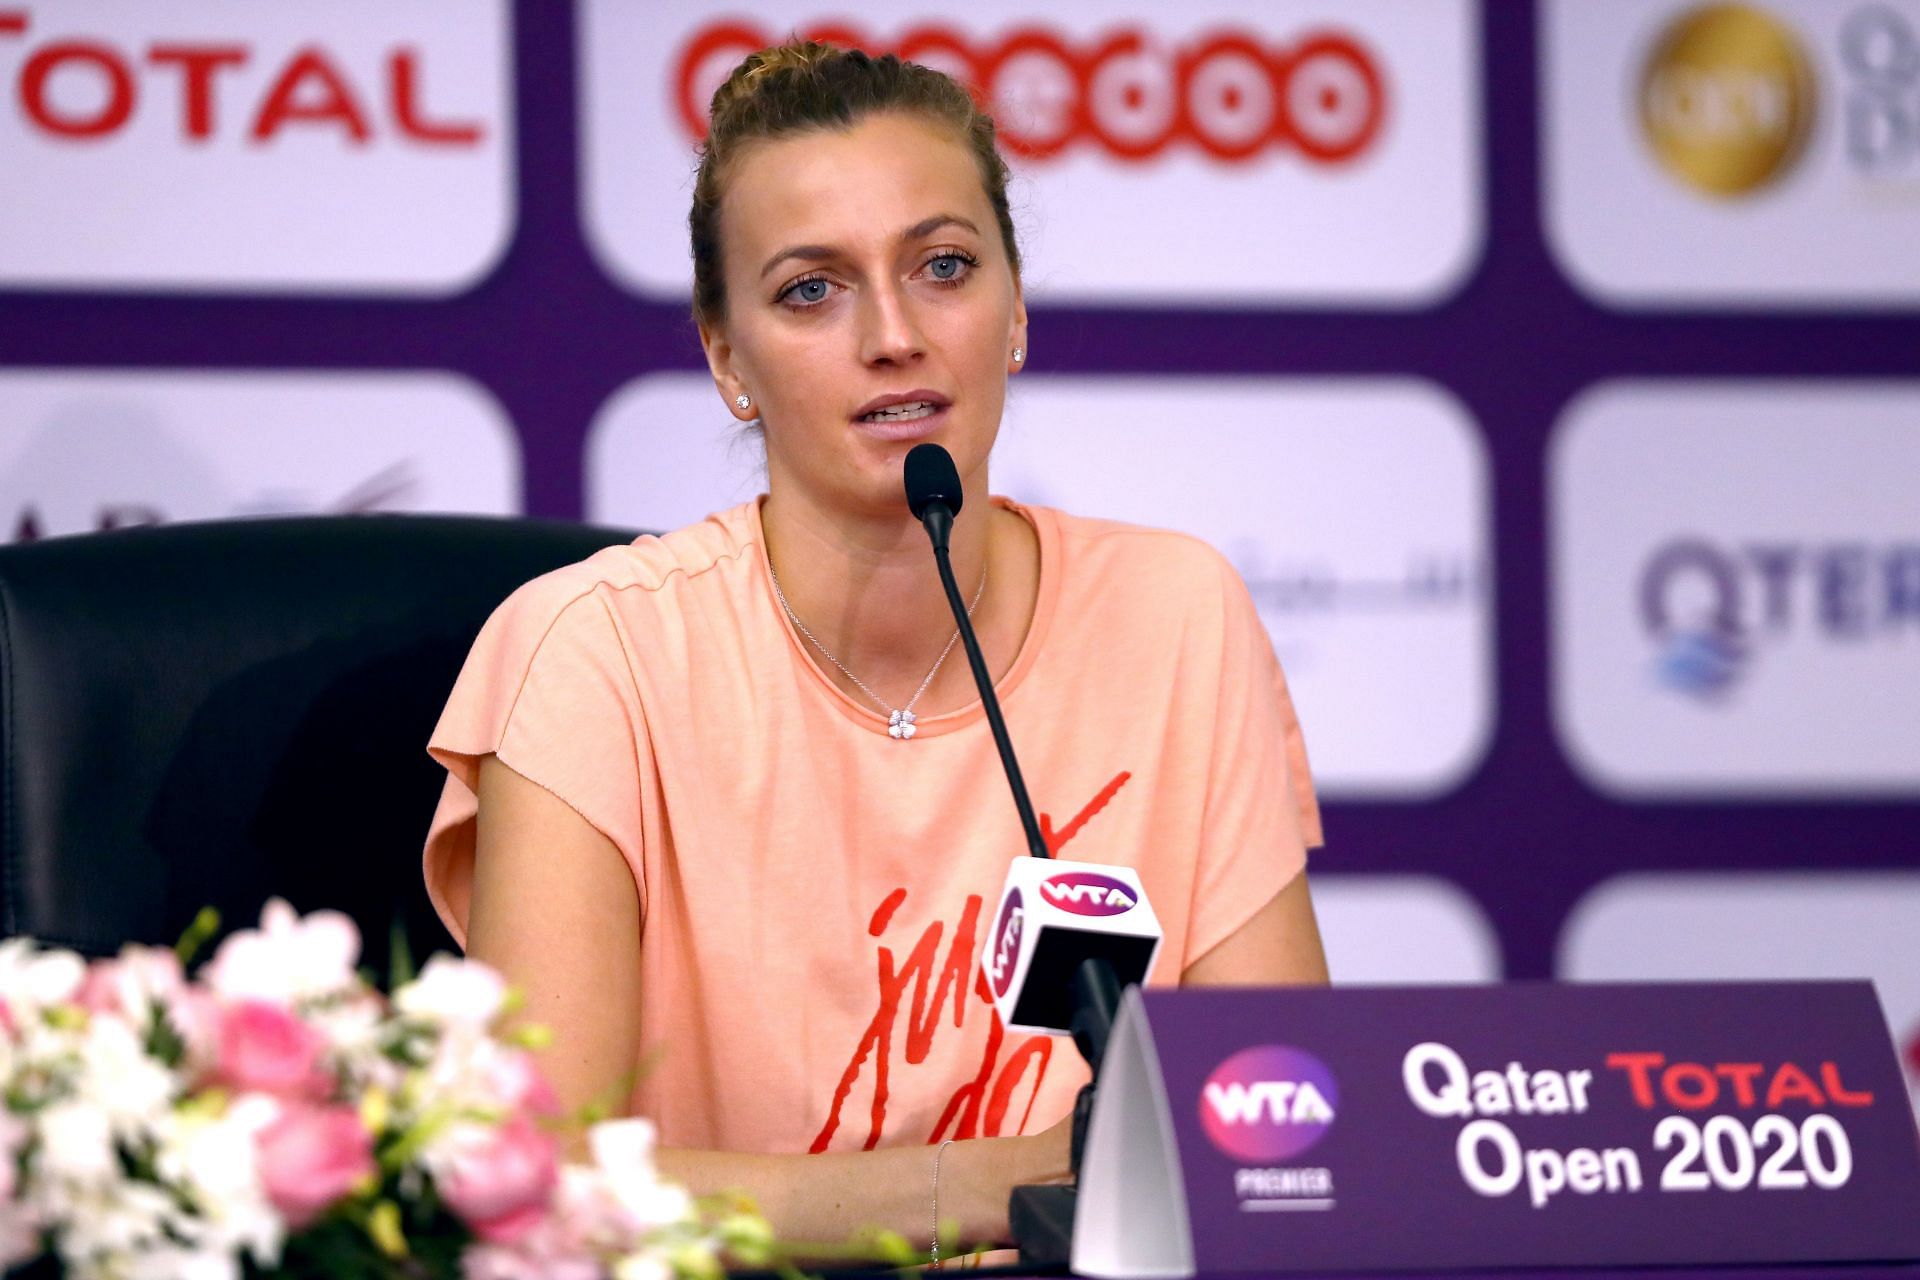 Petra Kvitova at the 2020 Qatar Open